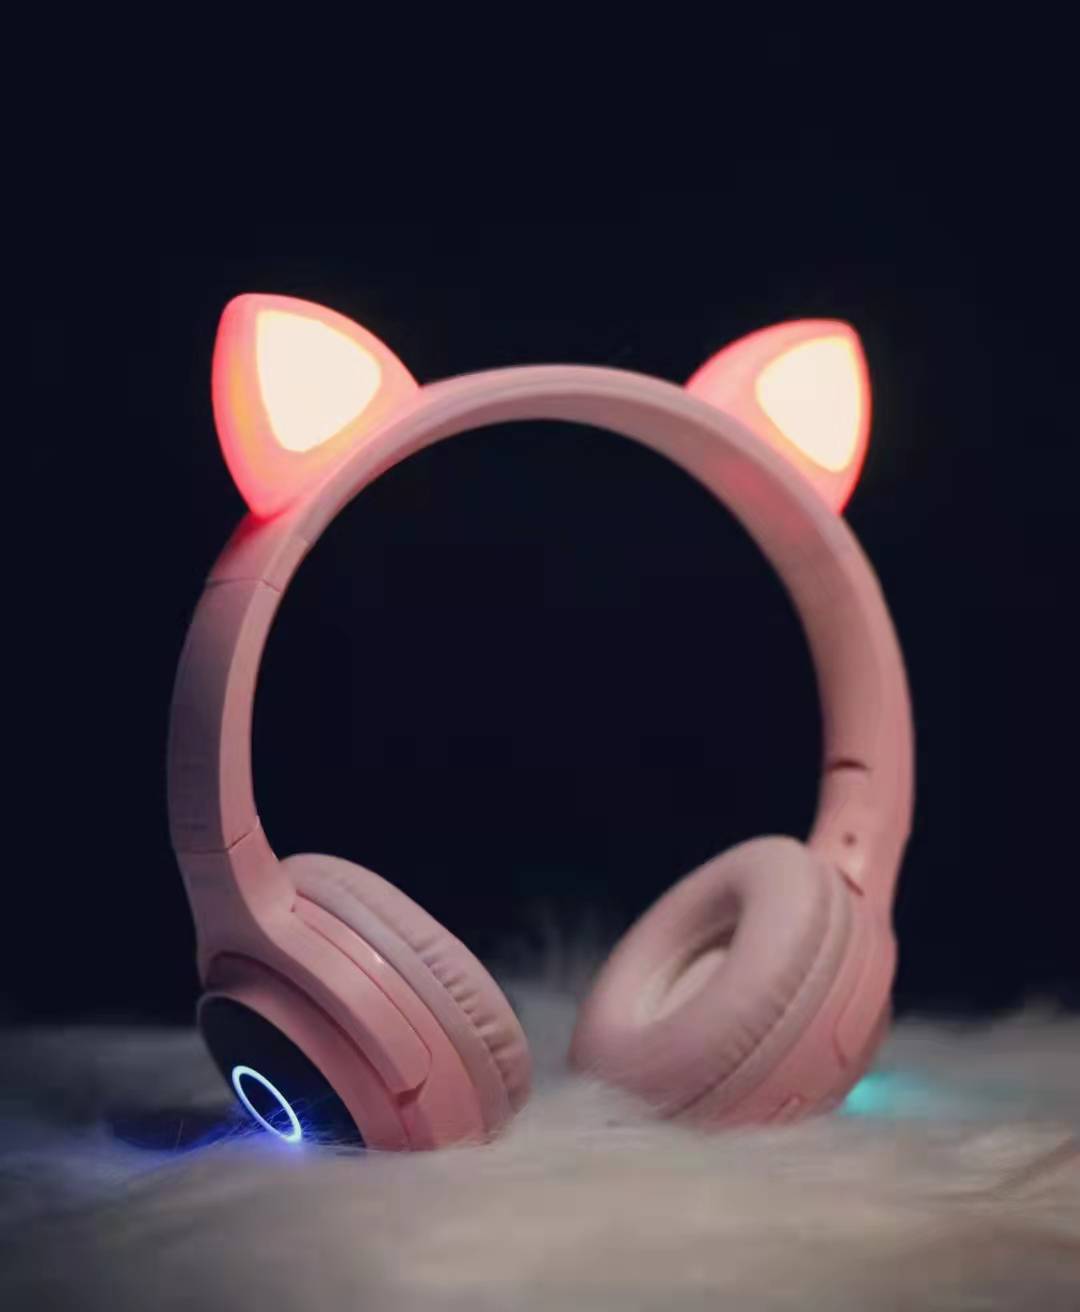 Fone de ouvido para computador com orelha de gato